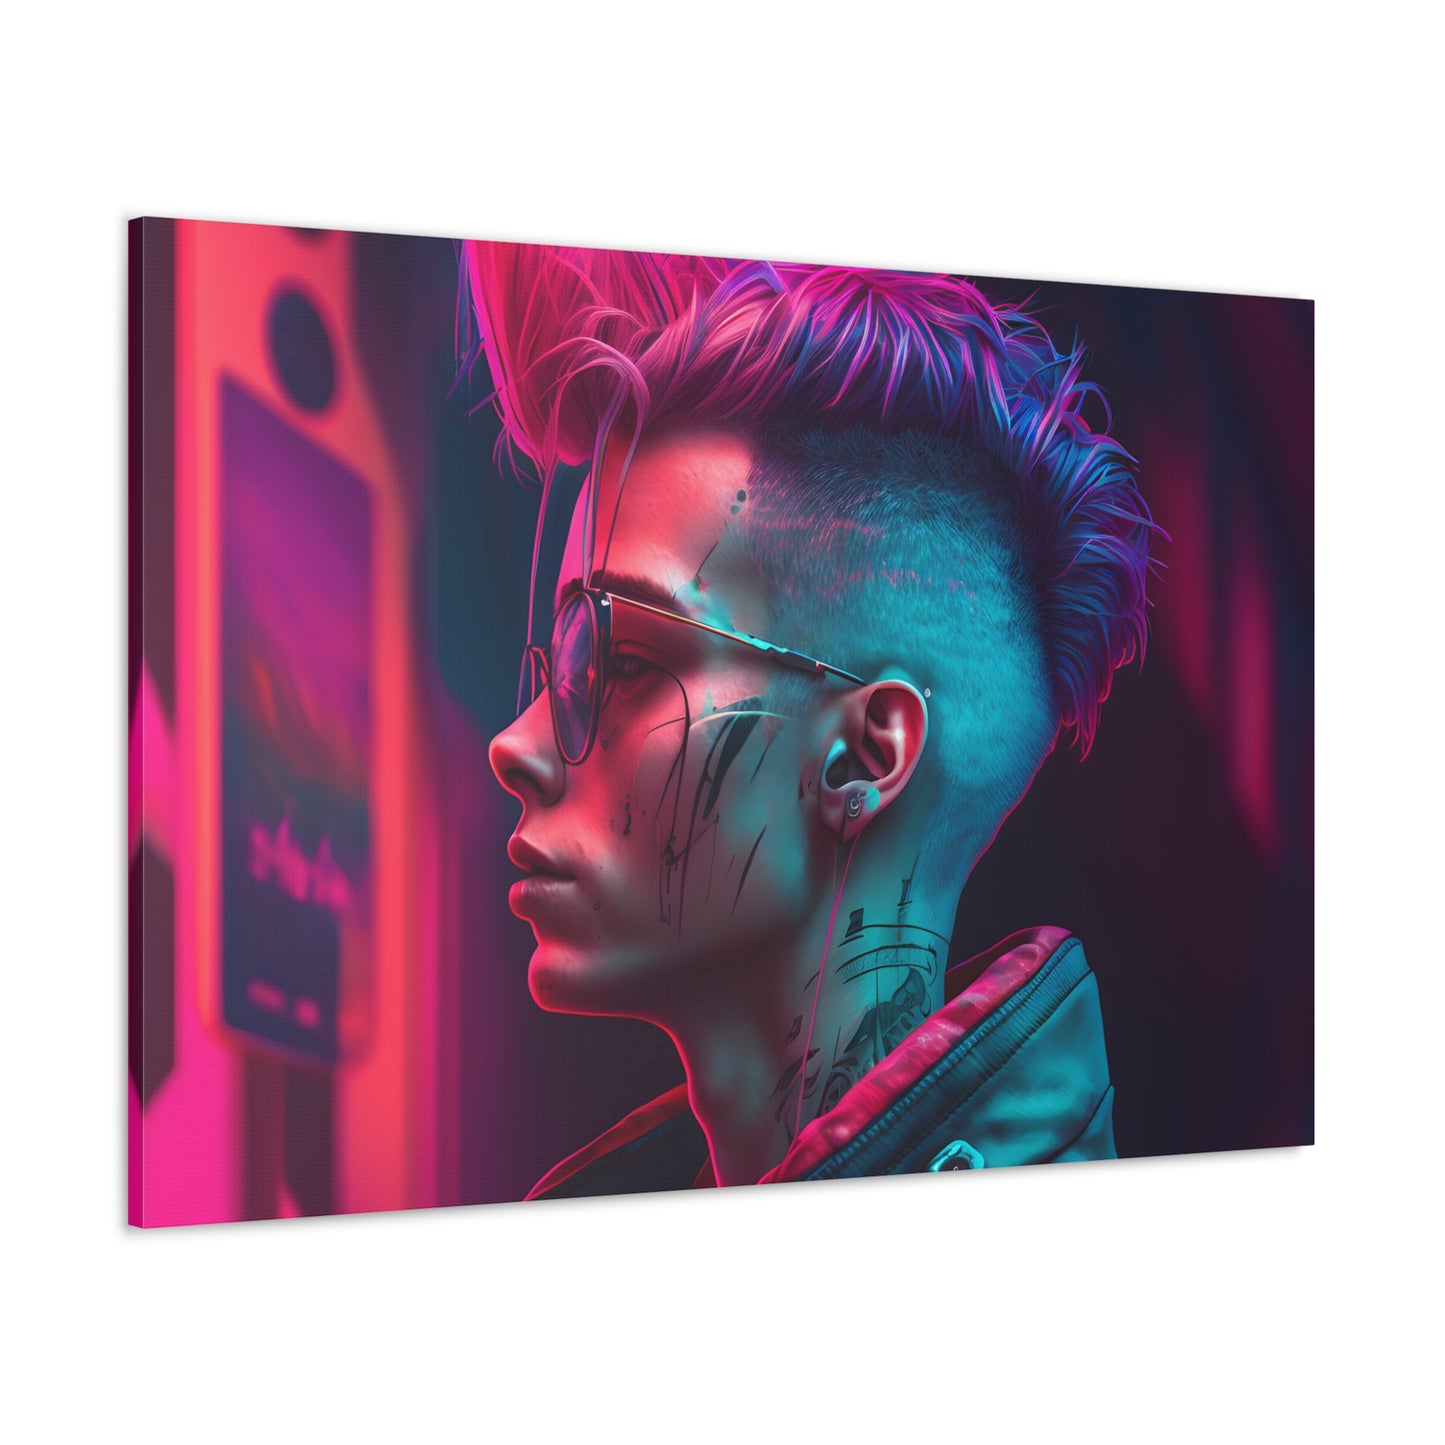 Neon Cyberpunk Portrait